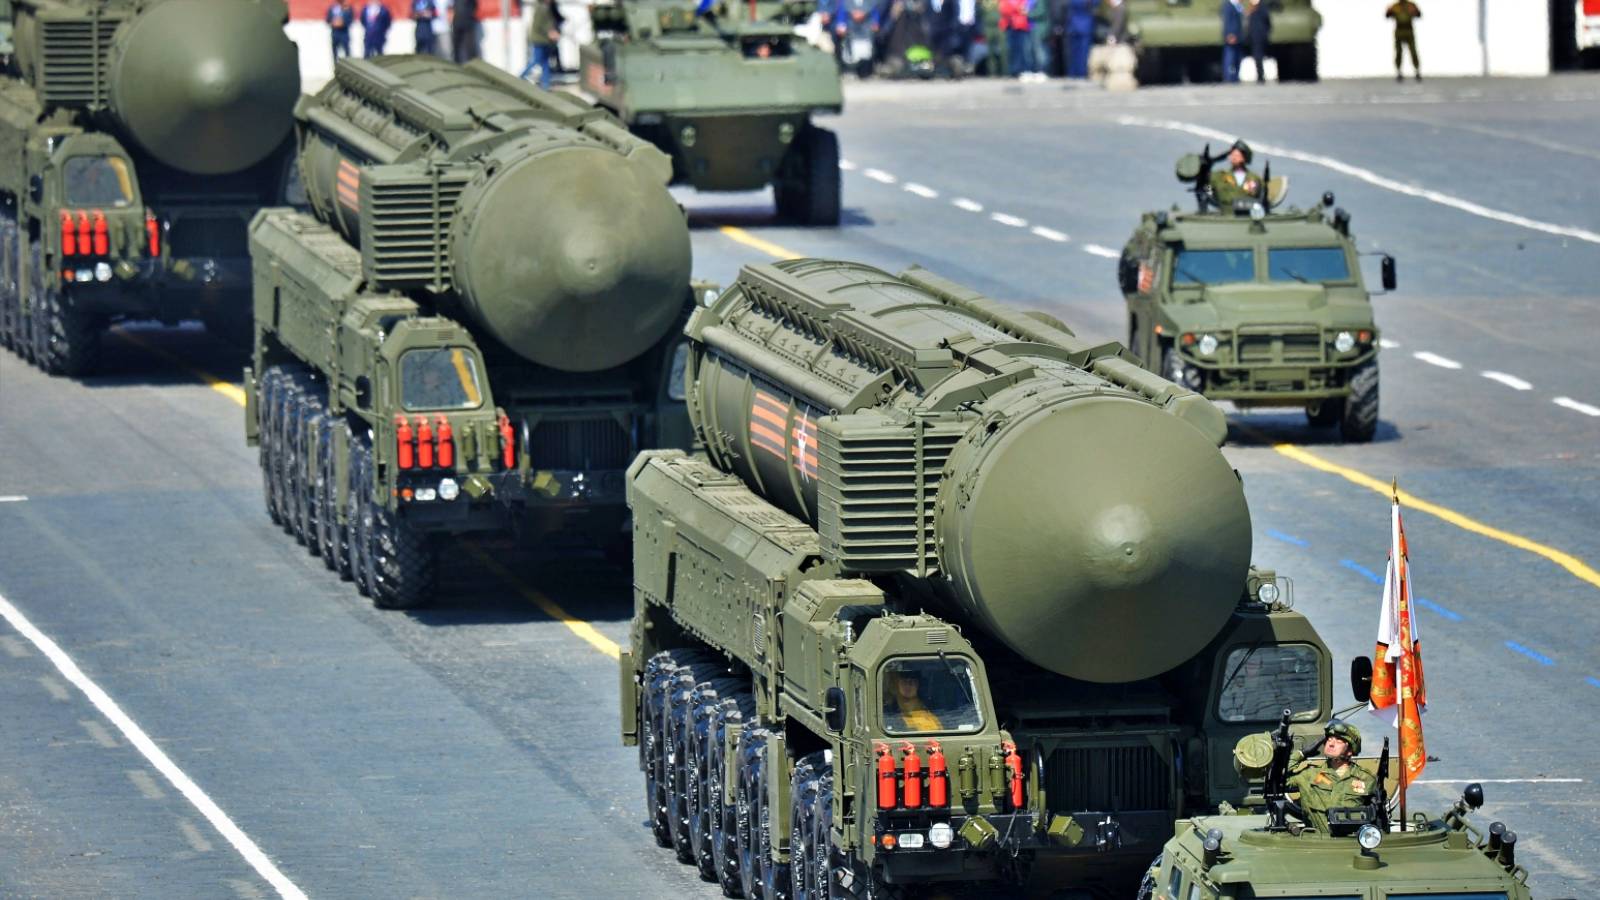 Rosja, ryzyko nuklearne jest poważne, broń nuklearna zostanie użyta podczas trzeciej wojny światowej